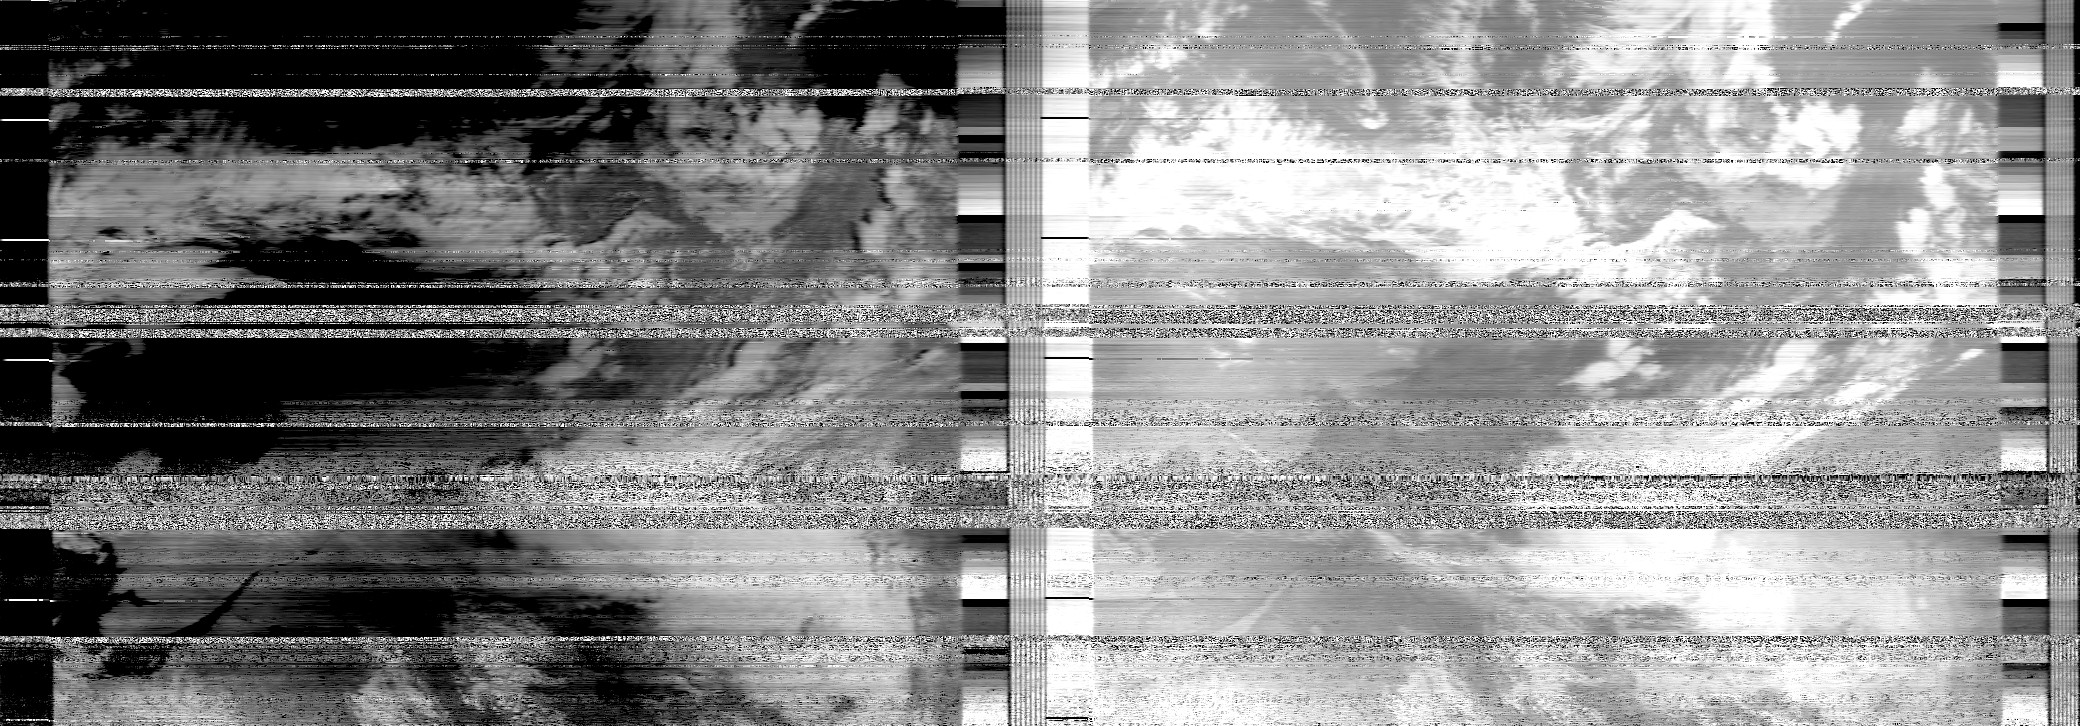 NOAA 19 Satellite, 21-5-18